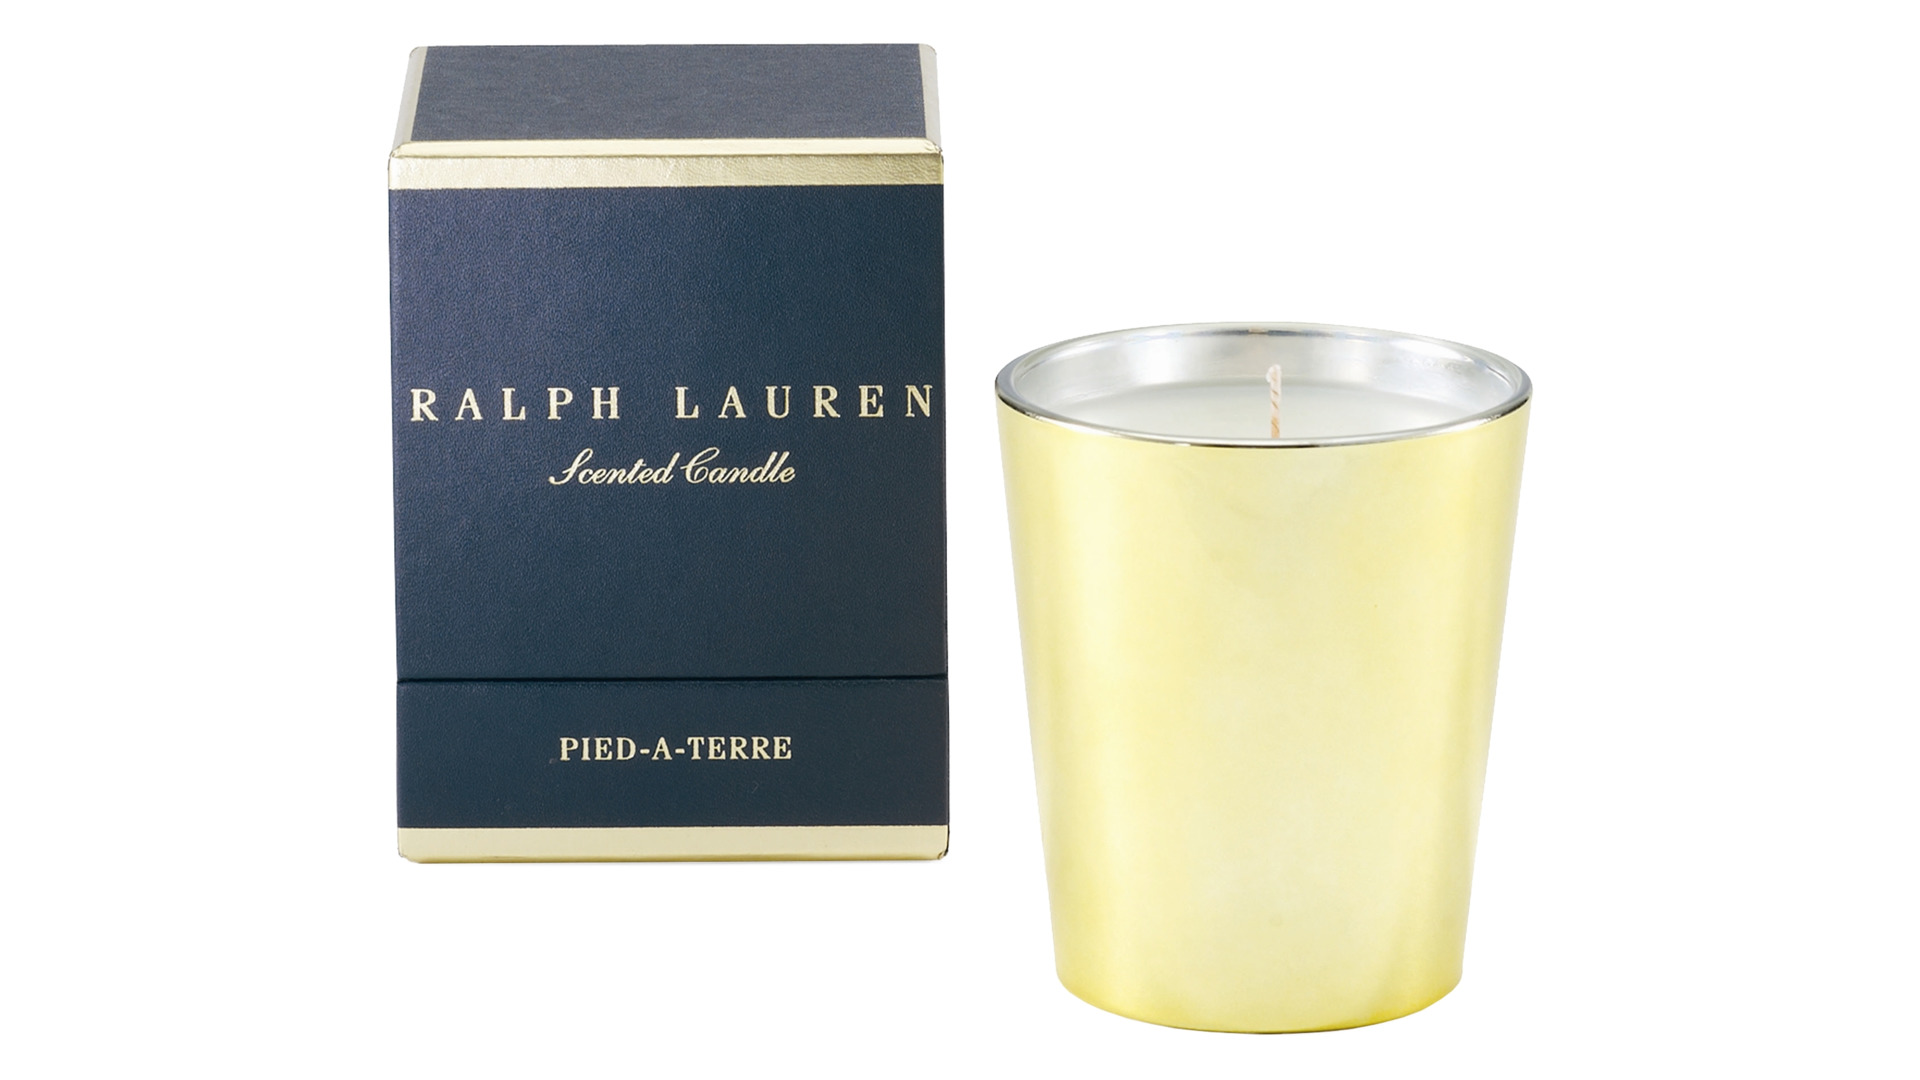 Свеча ароматизированная Ralph Lauren Home Пье-а-тер 10 см, французская тубероза, жа смин